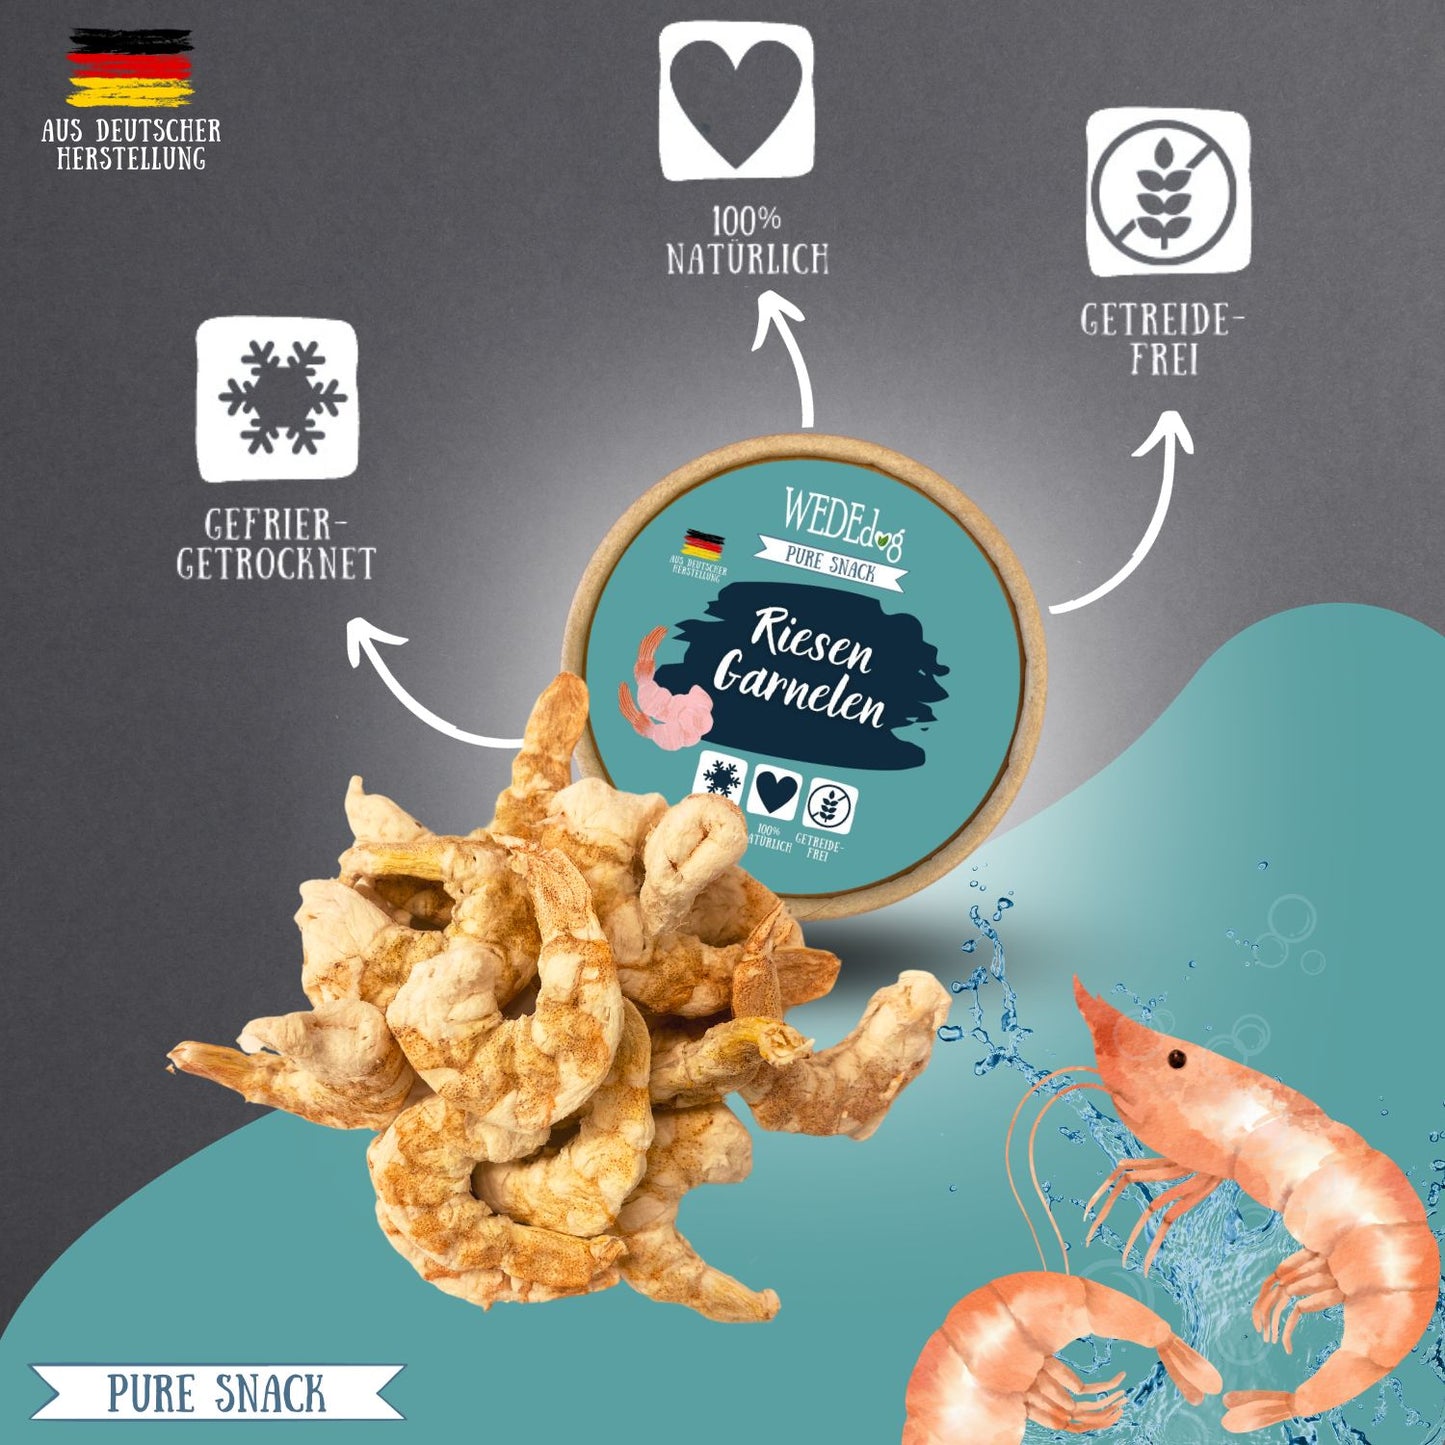 WEDEdog Pure Snack: Gefriergetrocknete Riesen Garnelen - Meeresfrische & Gourmetqualität